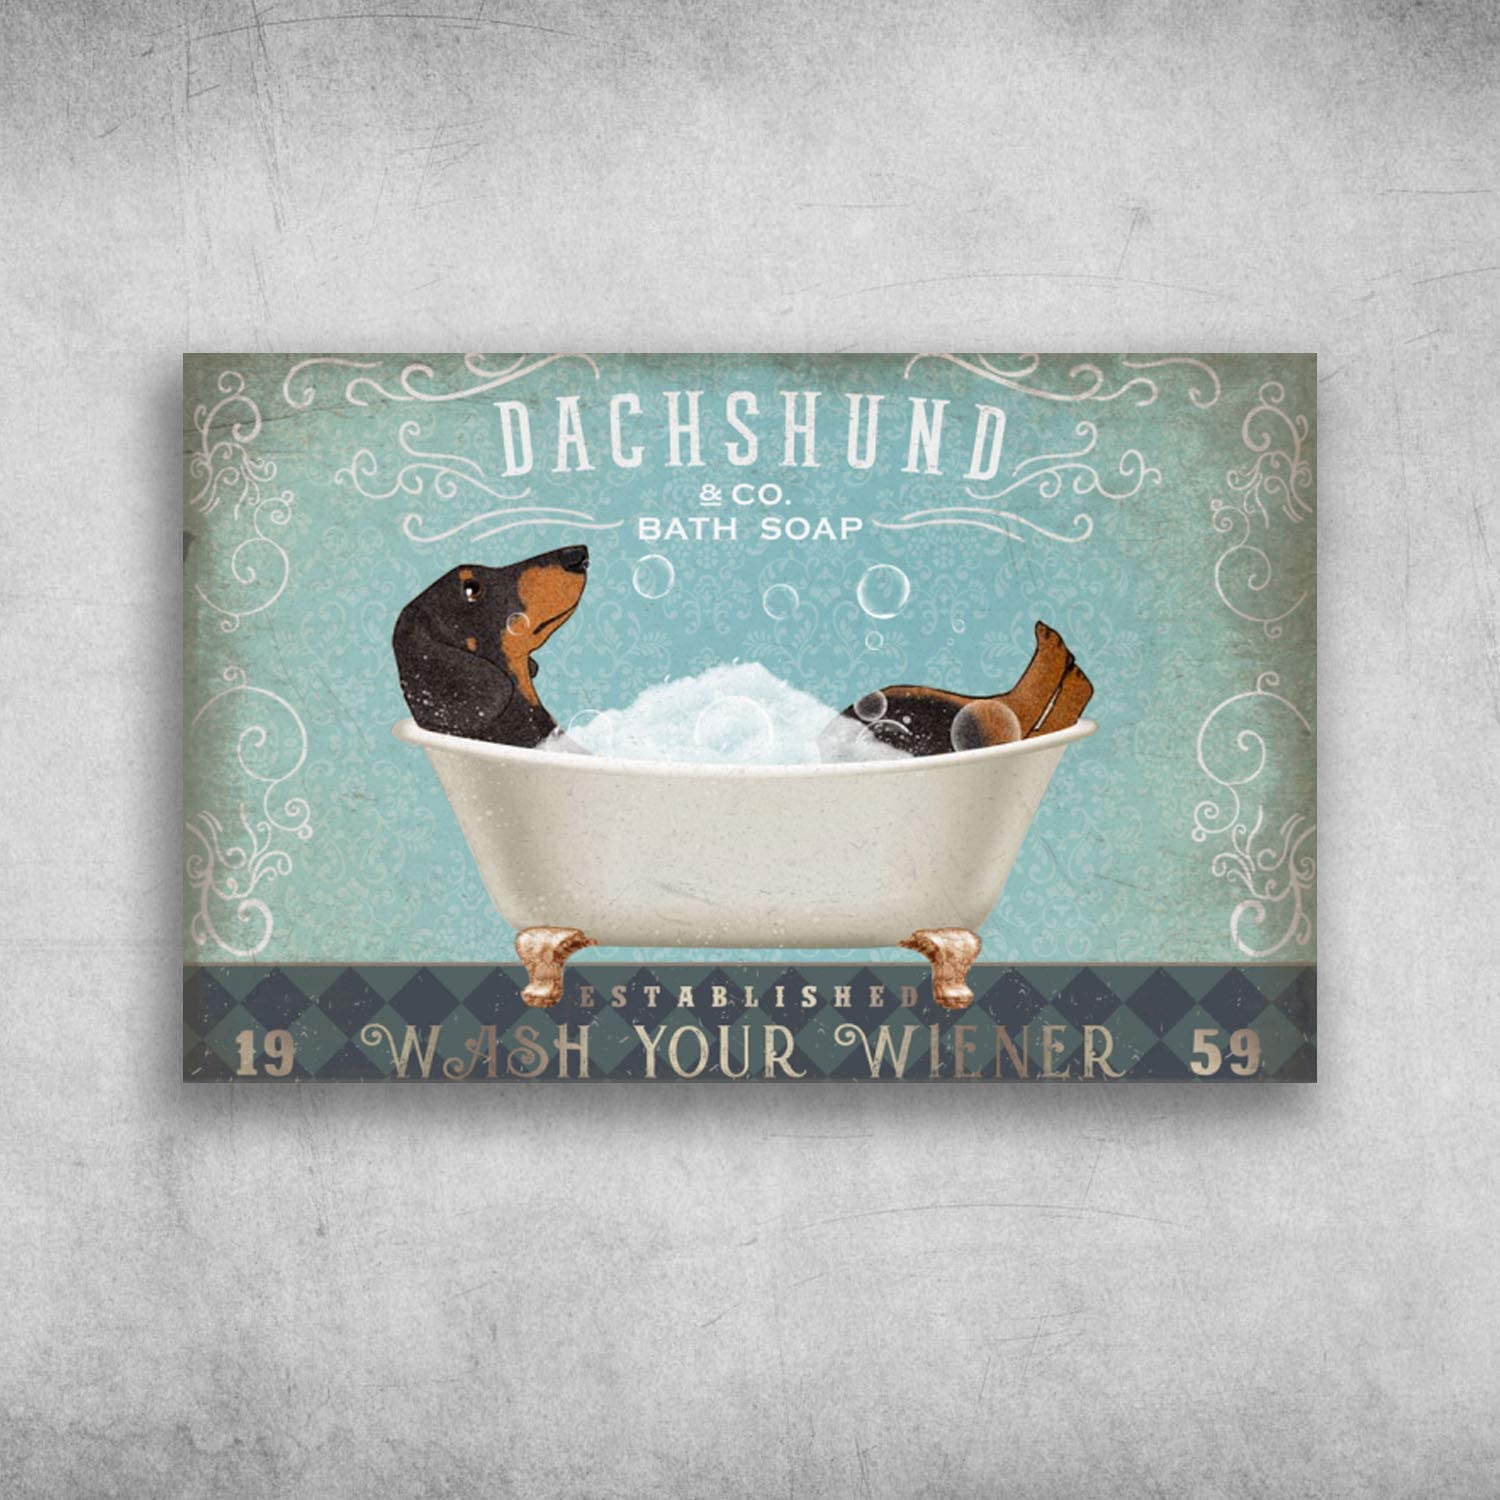 Dachshund Bath Soap Established Wash Your Wiener 1959